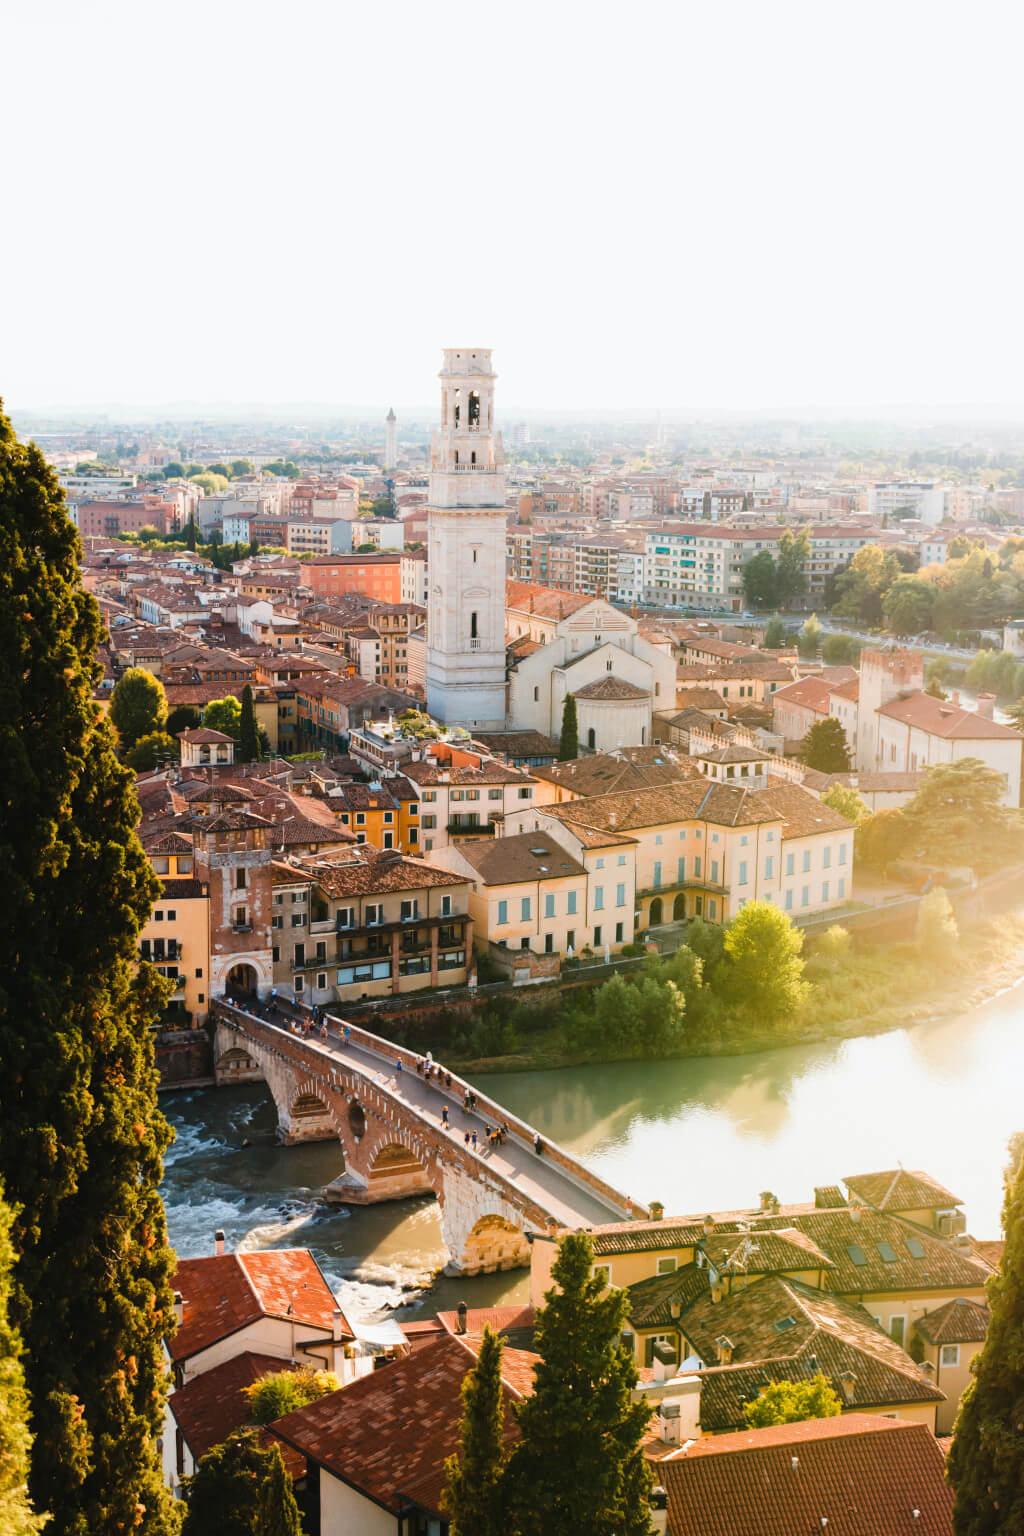 Cosas que hacer y ver en Verona